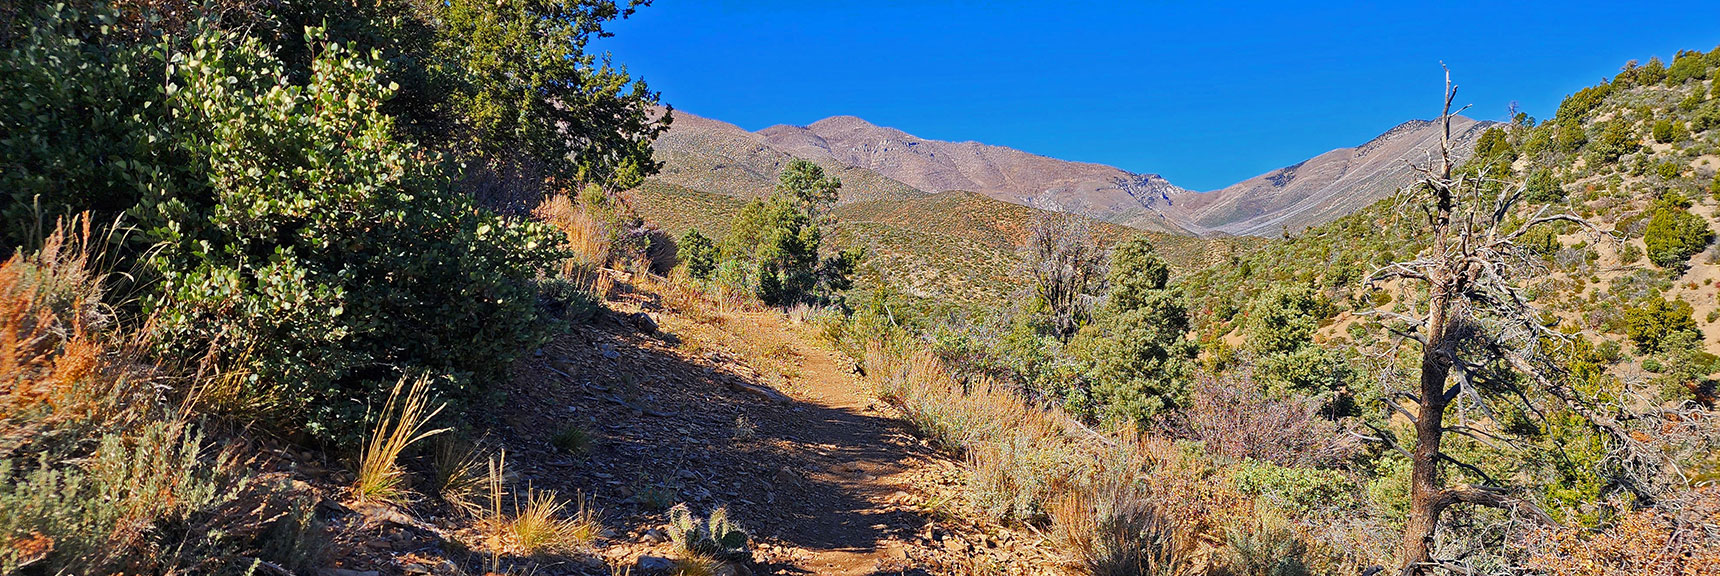 View Back Up Lovell Canyon Loop Trail Toward Upper Lovell Canyon | Lovell Canyon Loop Trail | Lovell Canyon Nevada